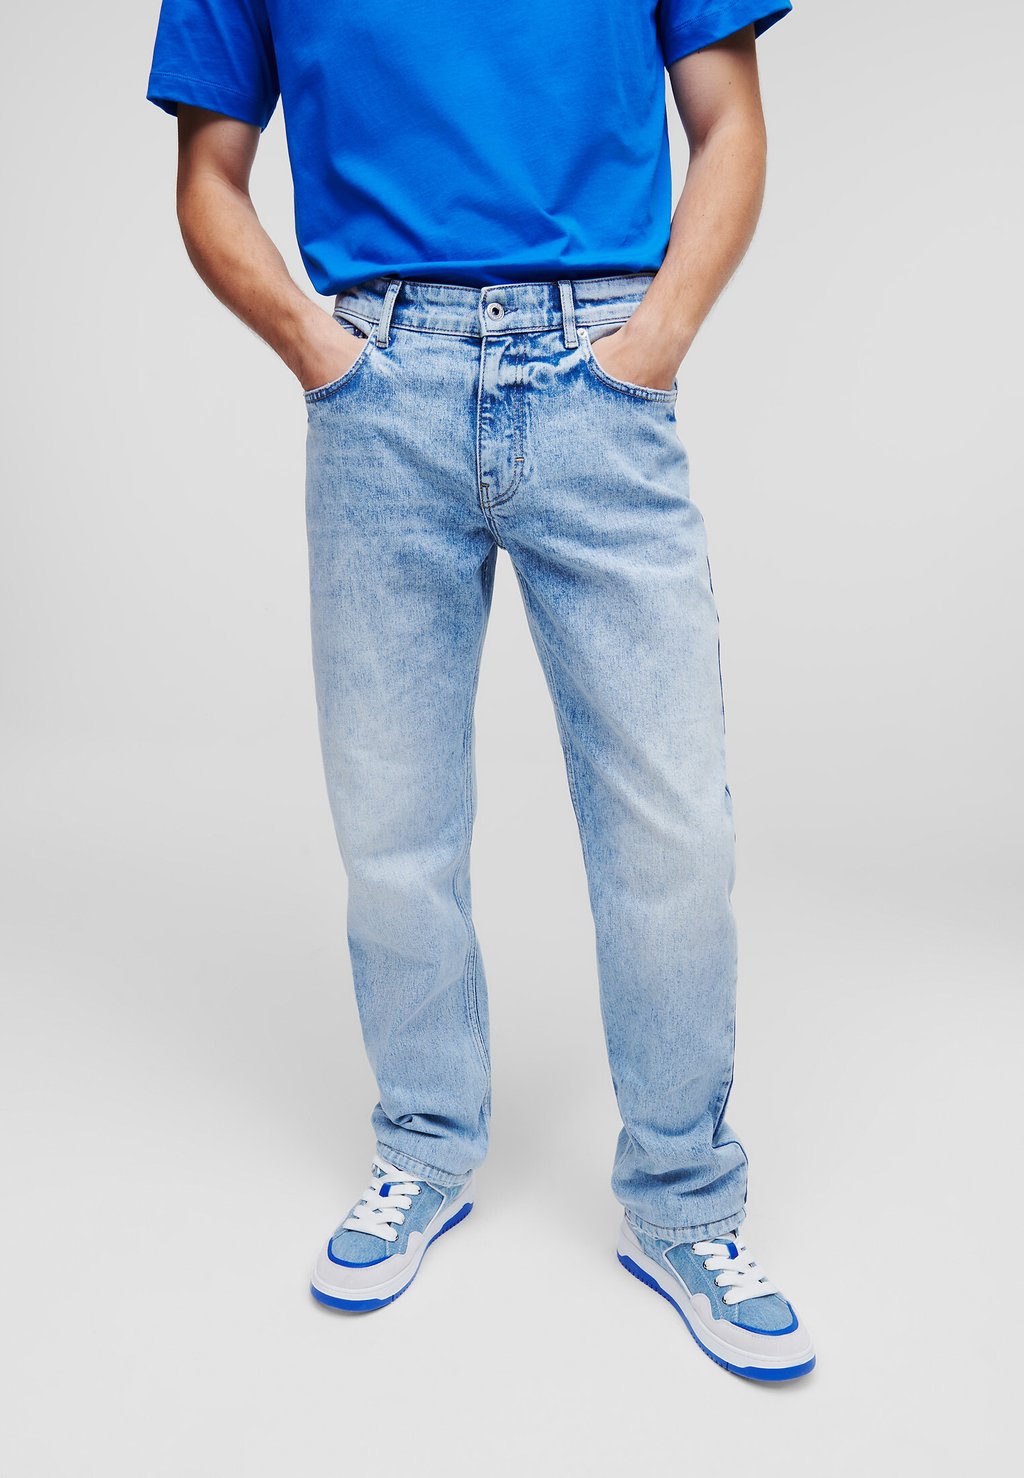 Джинсы-сигареты Karl Lagerfeld, j145 визуально светло-голубые джинсы сигареты ombre светло голубые